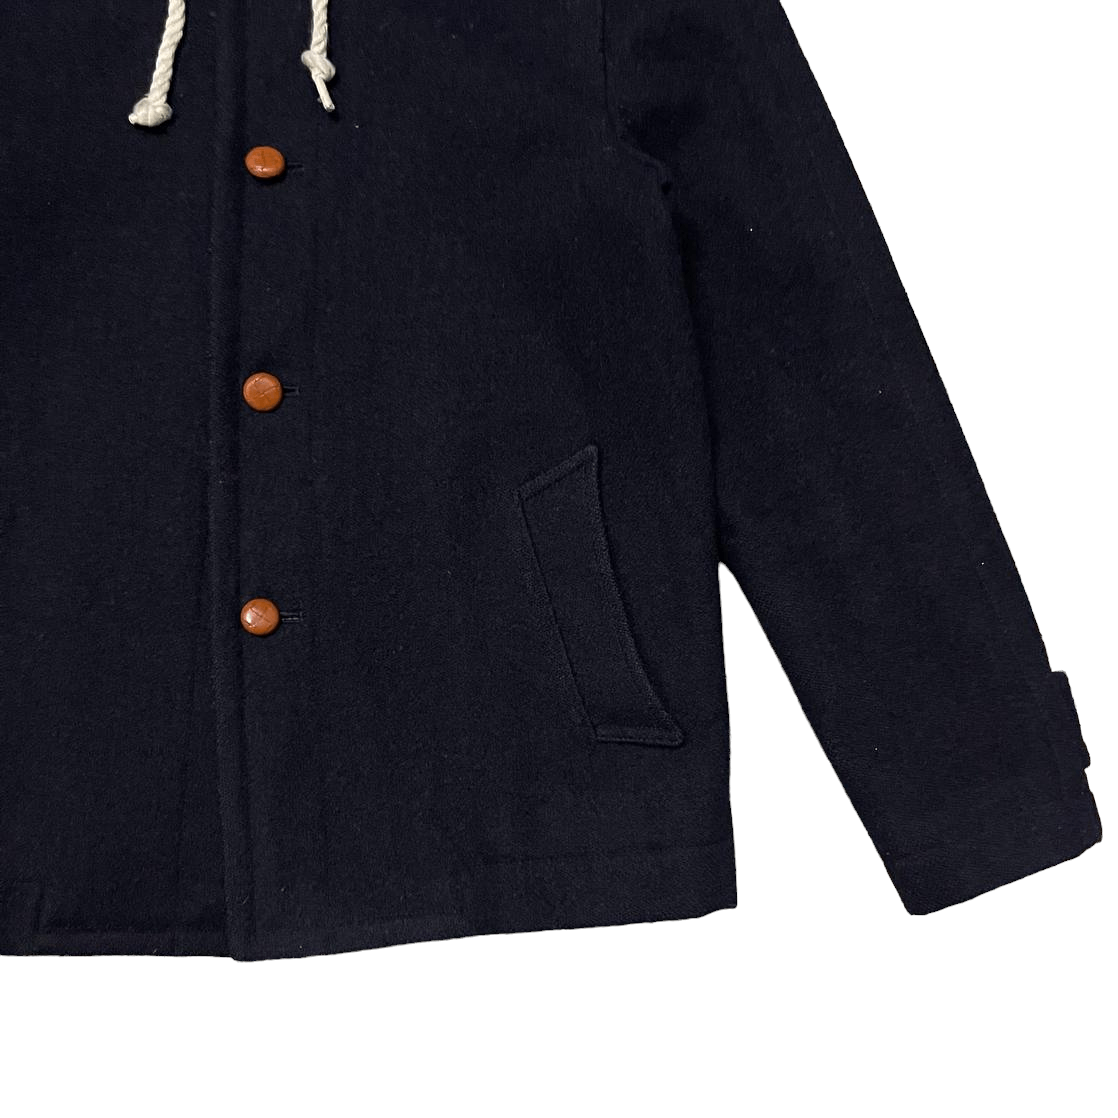 Vintage Beams Wool Hooded Coat - 5